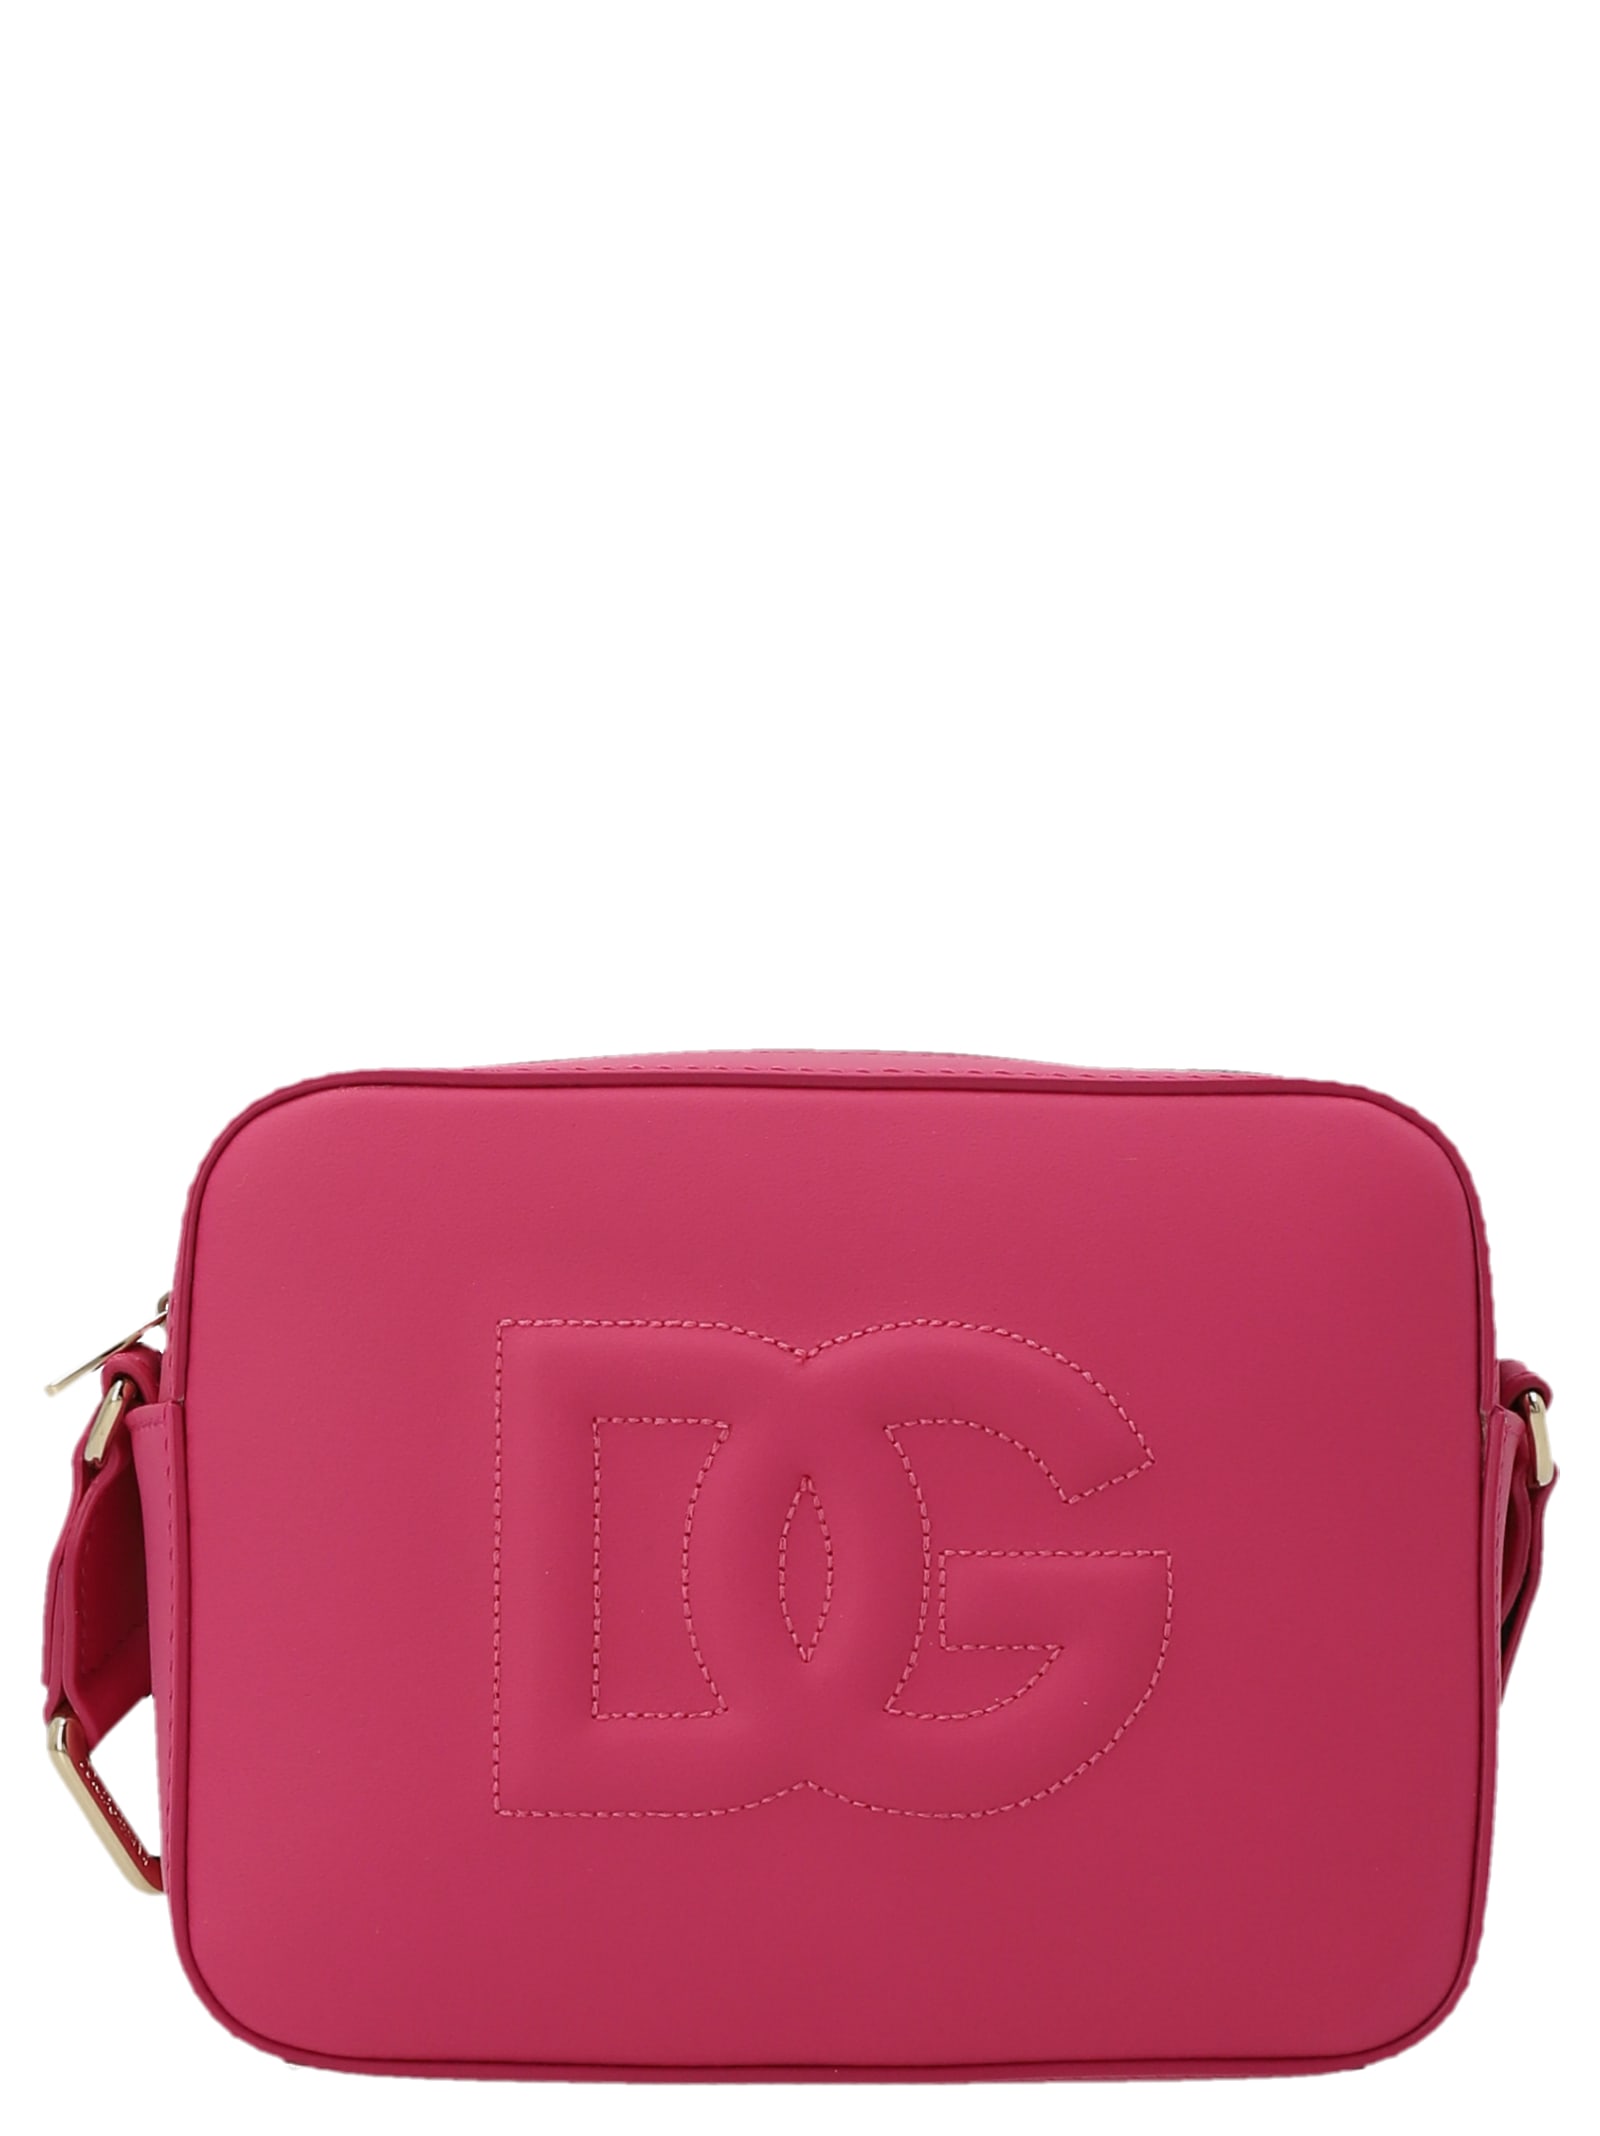 Dolce & Gabbana farmer Girl Crossbody Bag